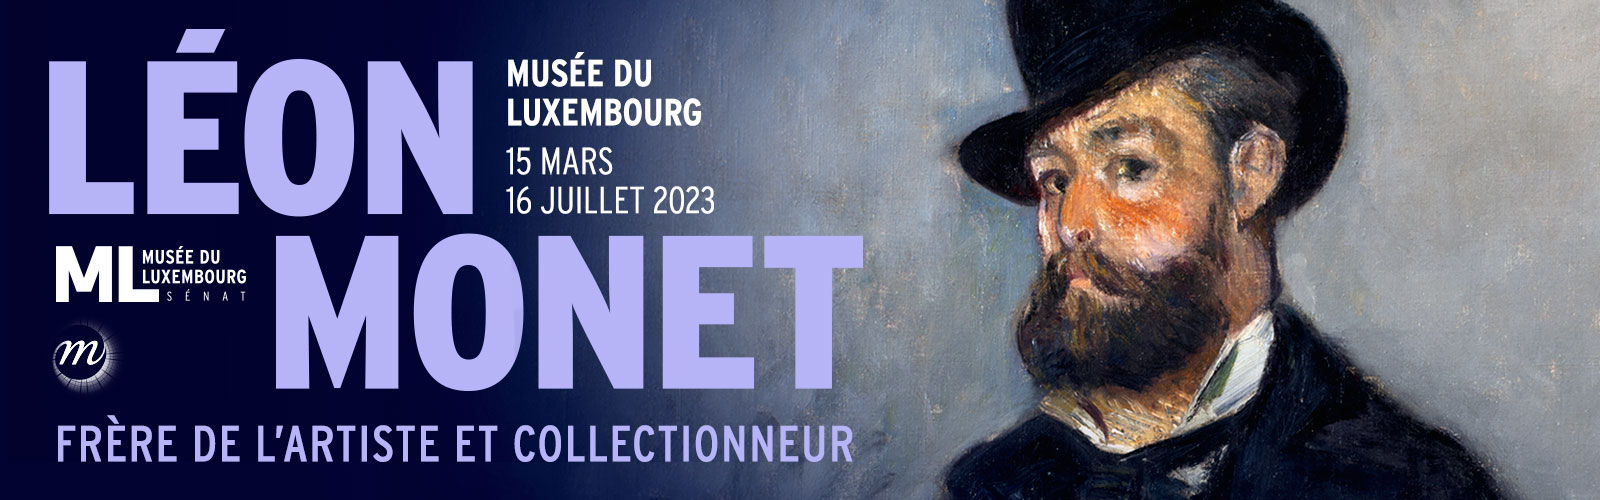 Affiche de l'exposition Léon Monet, Frère de l'artiste et collectionneur au Musée du Luxembourg du 15 mars au 16 juillet 2023